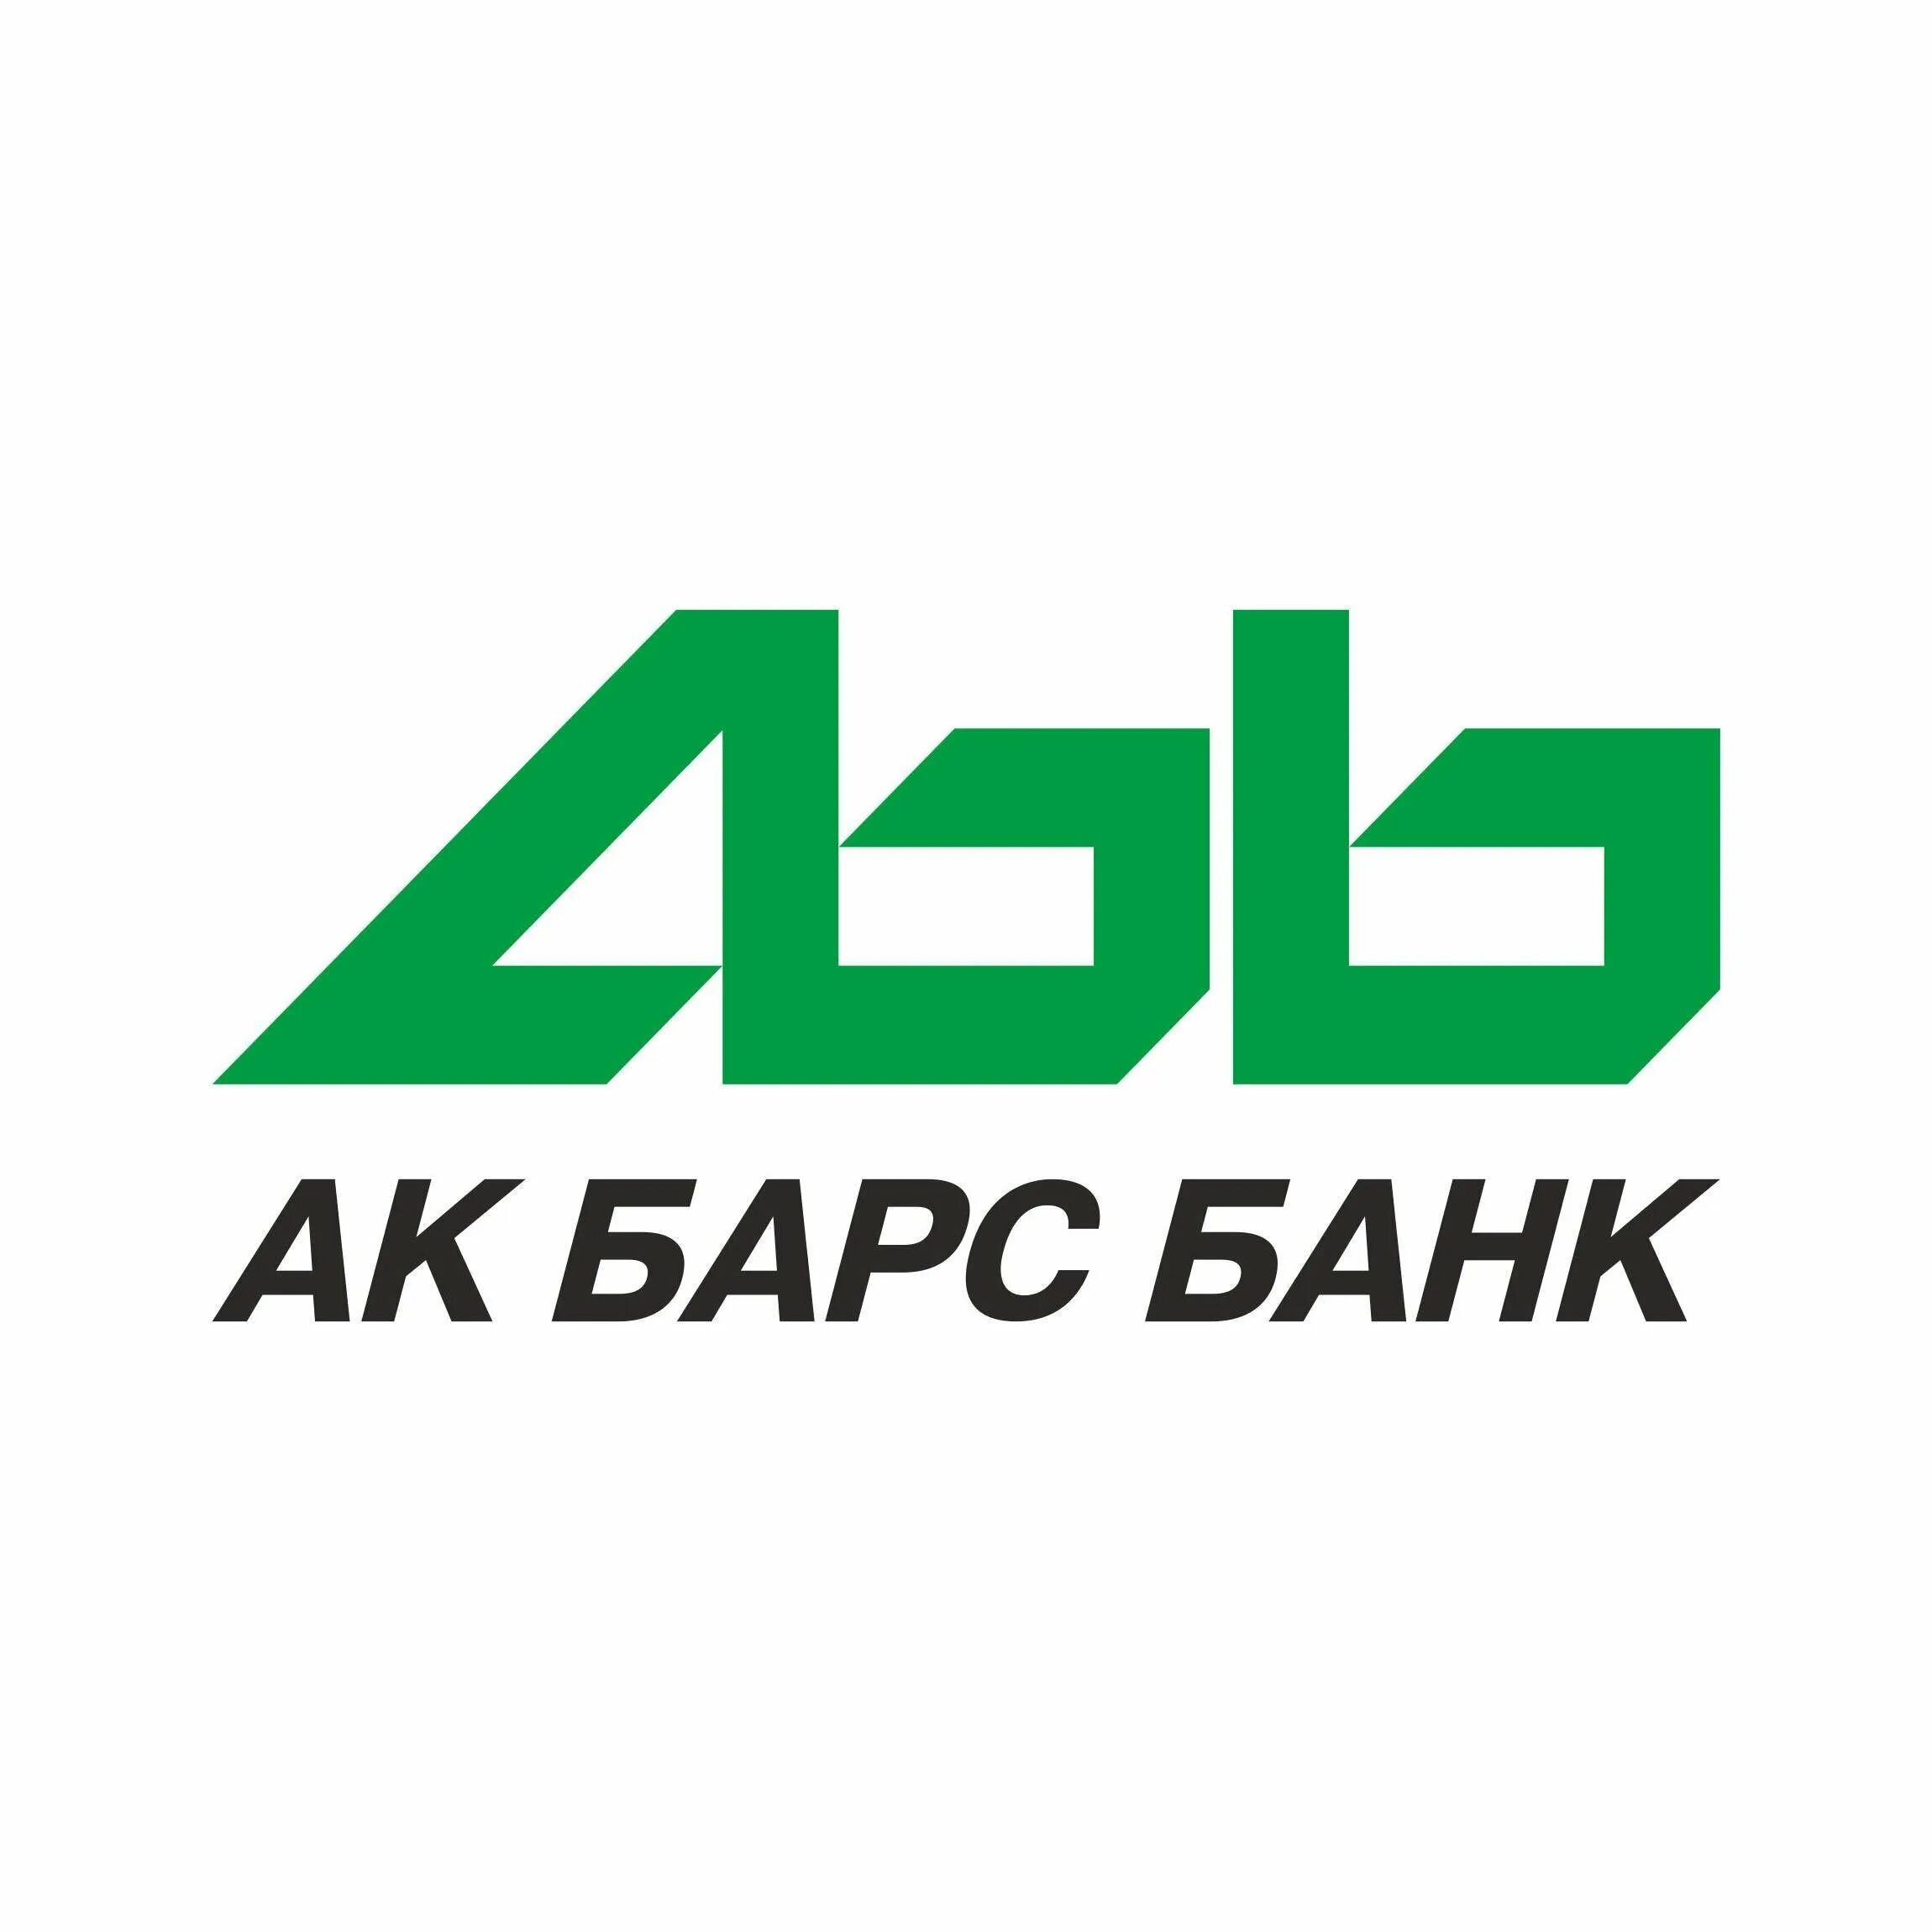 Логотип АК Барс банка. АК Барс банк логотип без фона. Фирменный знак банка АКБАРС. АК Барс банк ВКОНТАКТЕ.